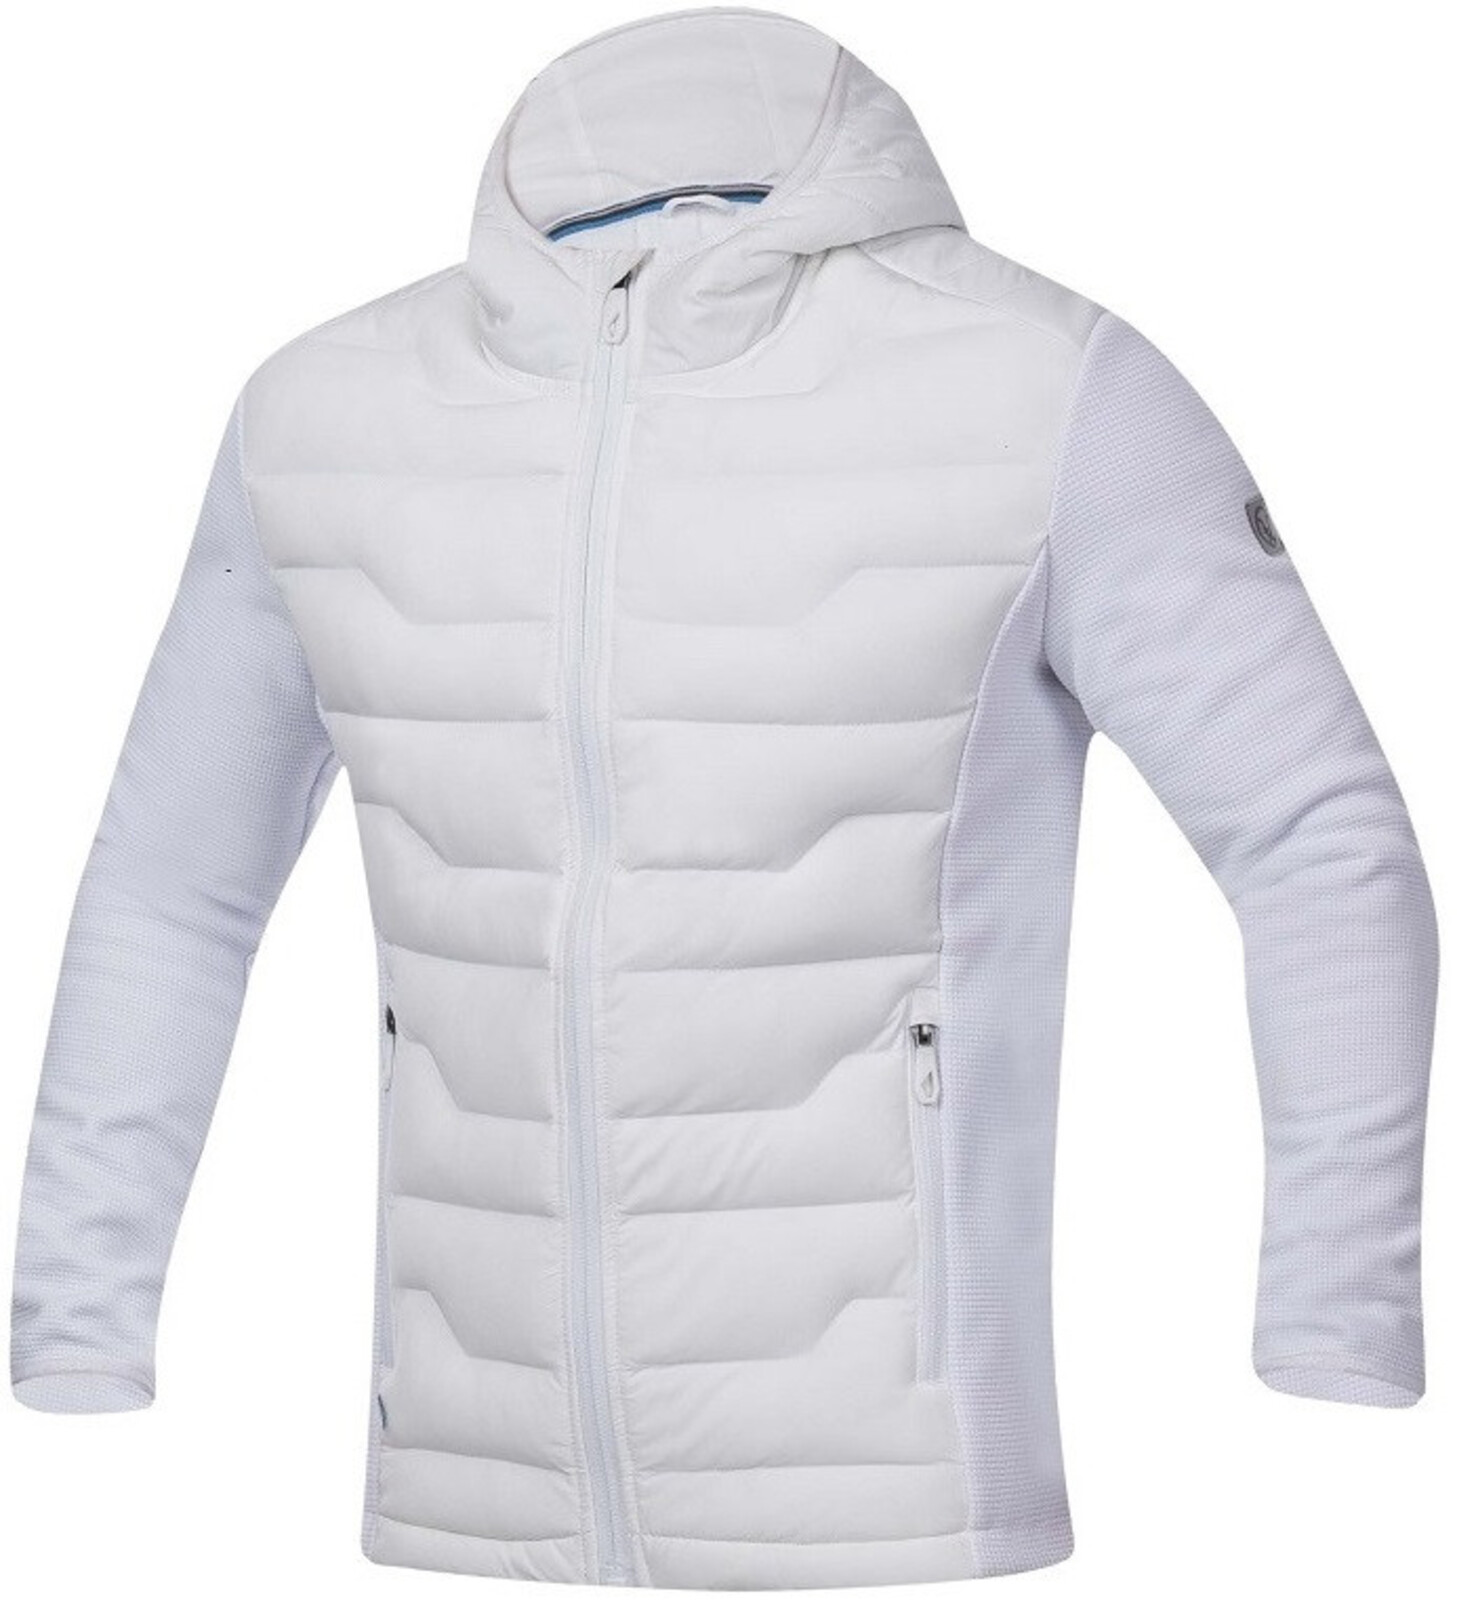 Pánska úpletová bunda Ardon Nypaxx - veľkosť: 4XL, farba: biela